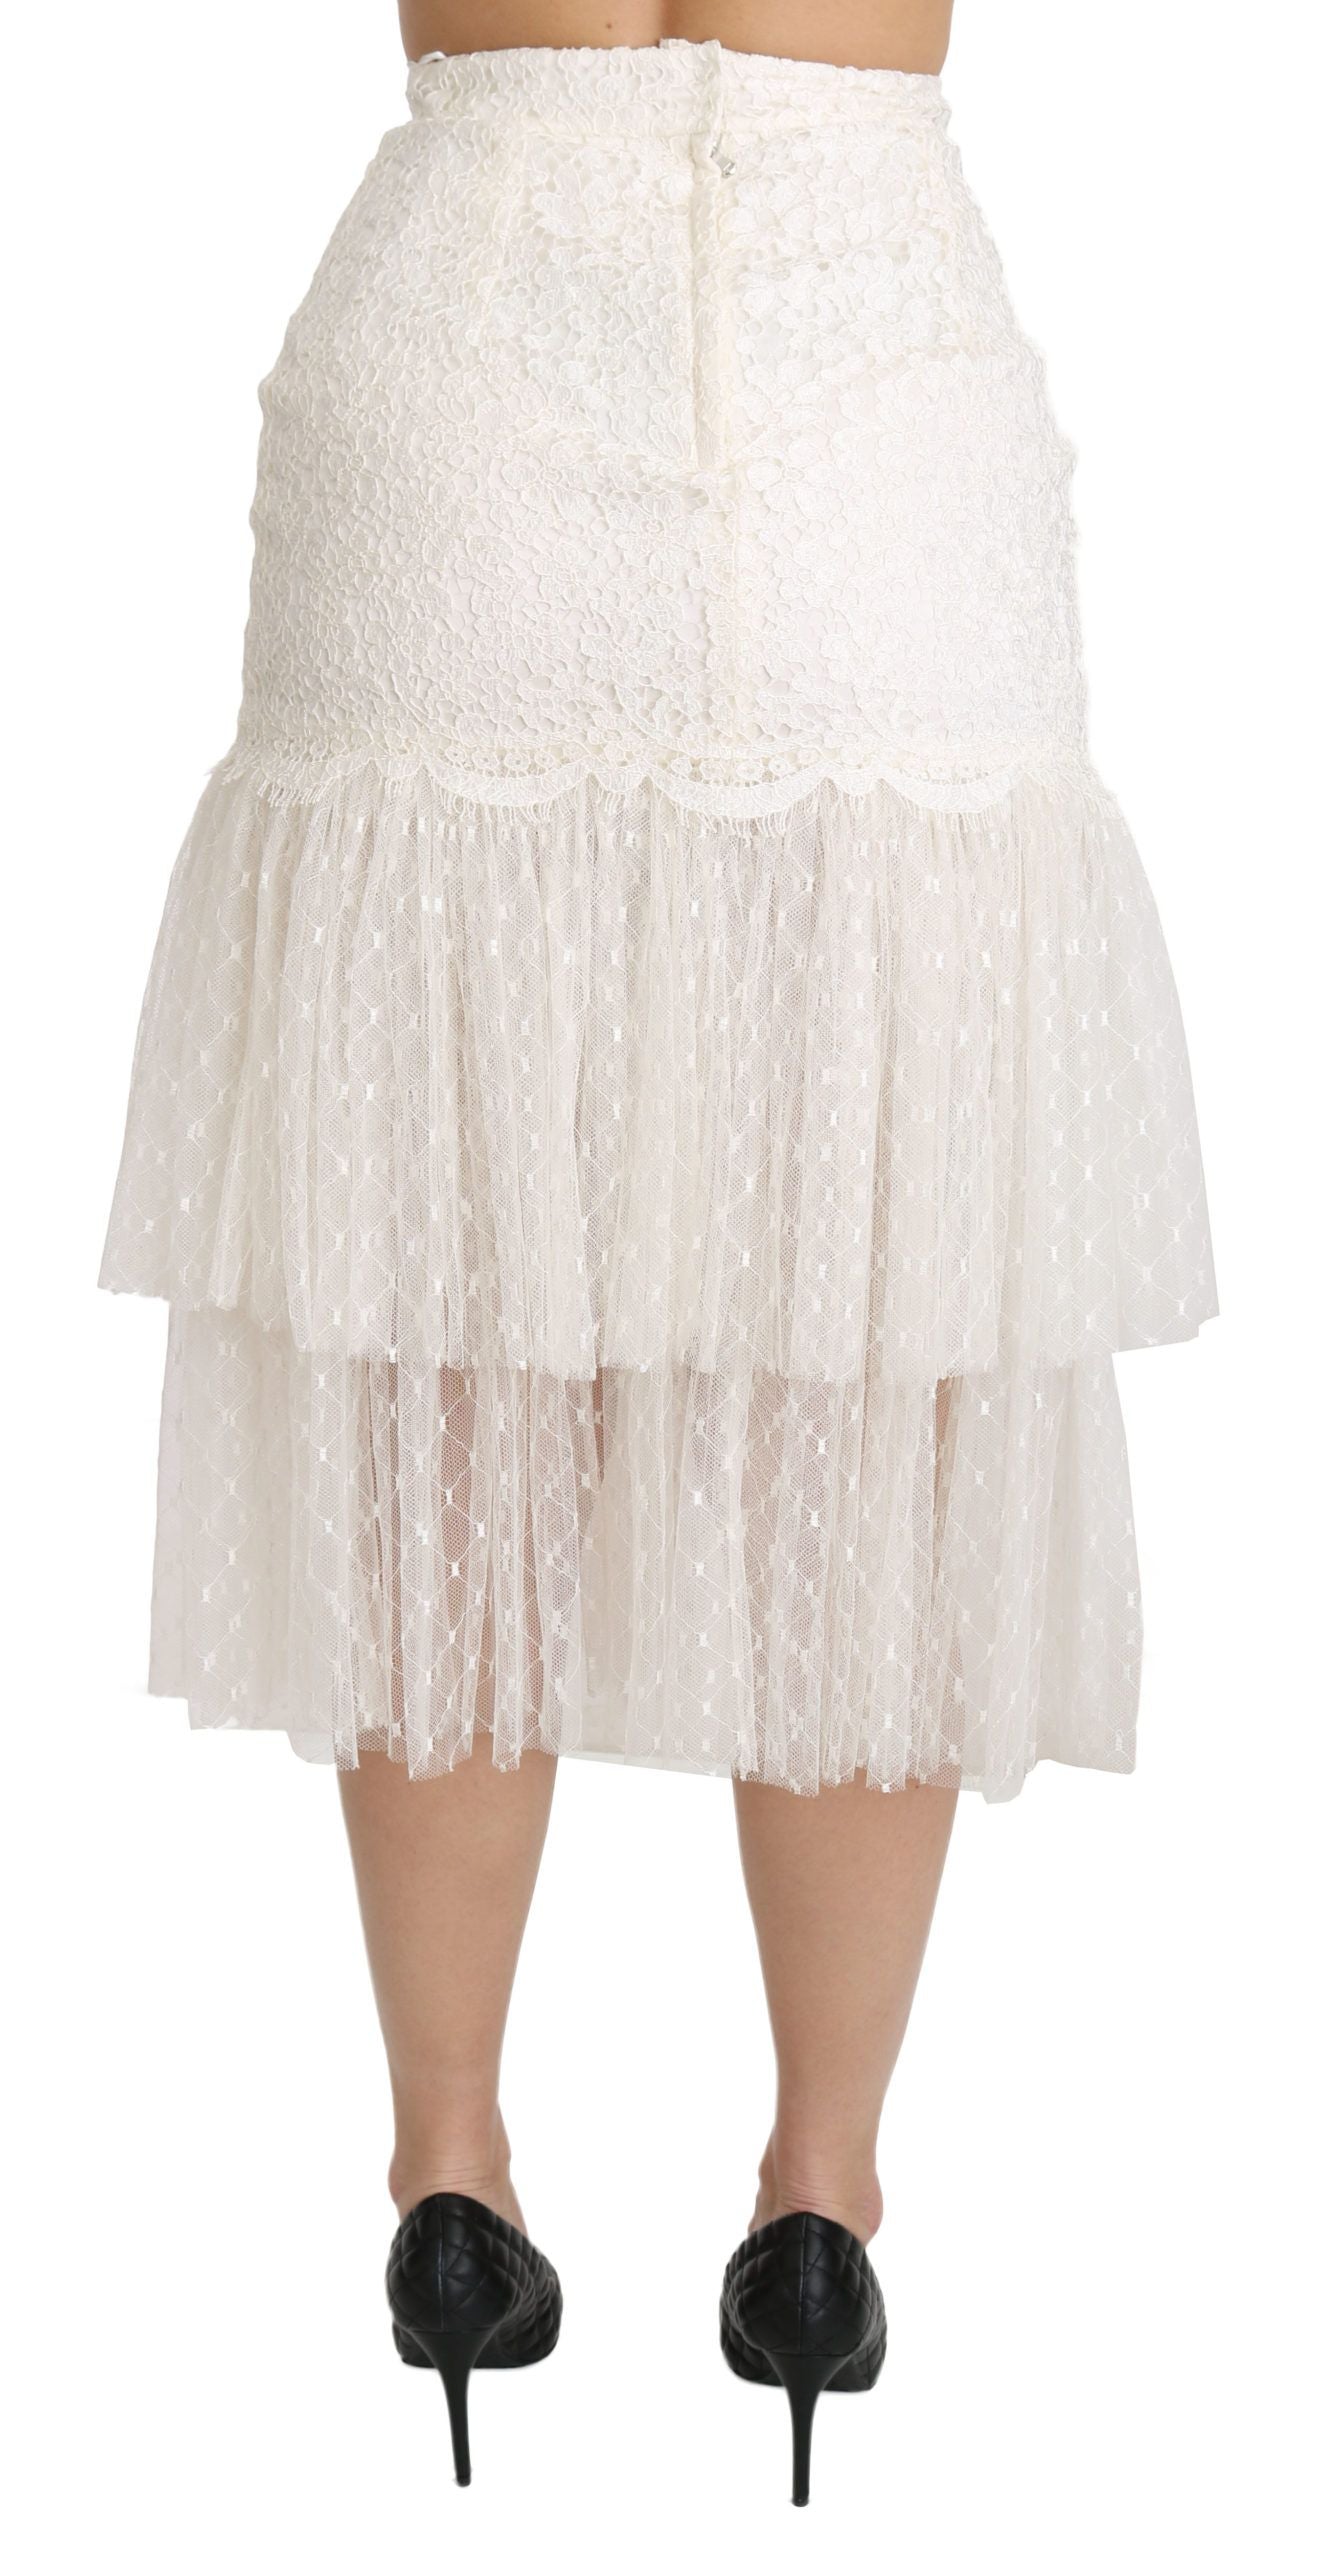 Elegant White Lace High-Waist Skirt